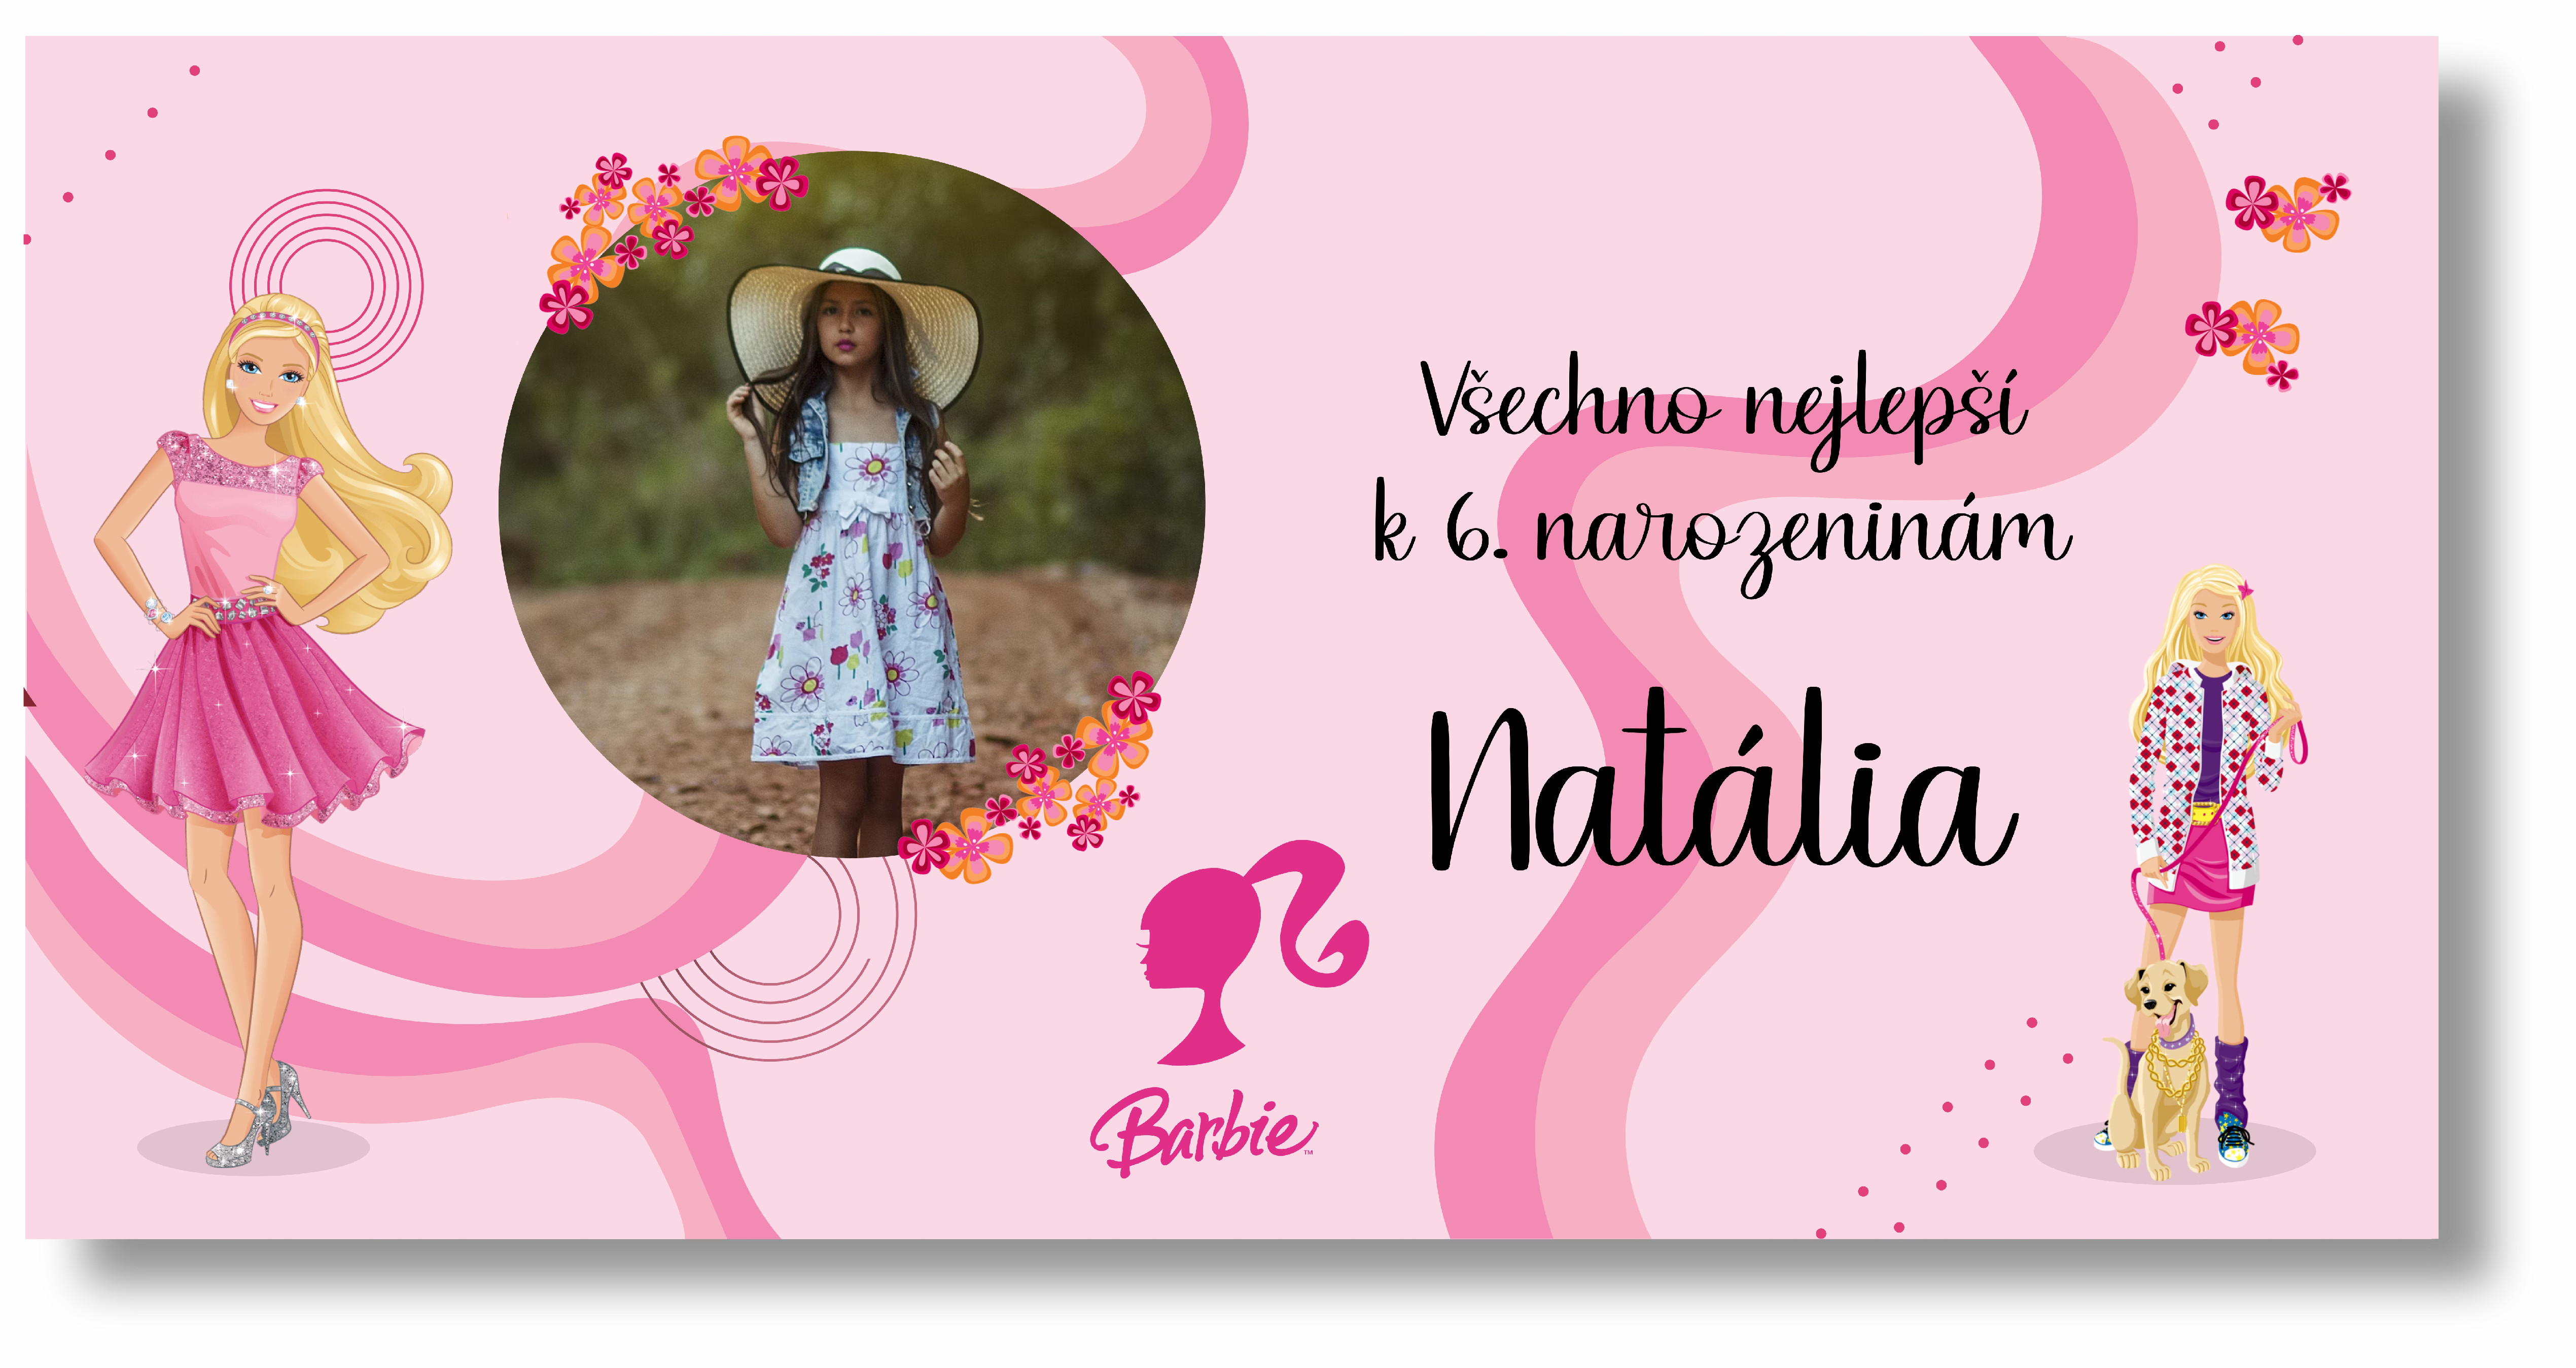 Personal Narozeninový banner s fotkou - Barbie Rozmer banner: 130 x 65 cm